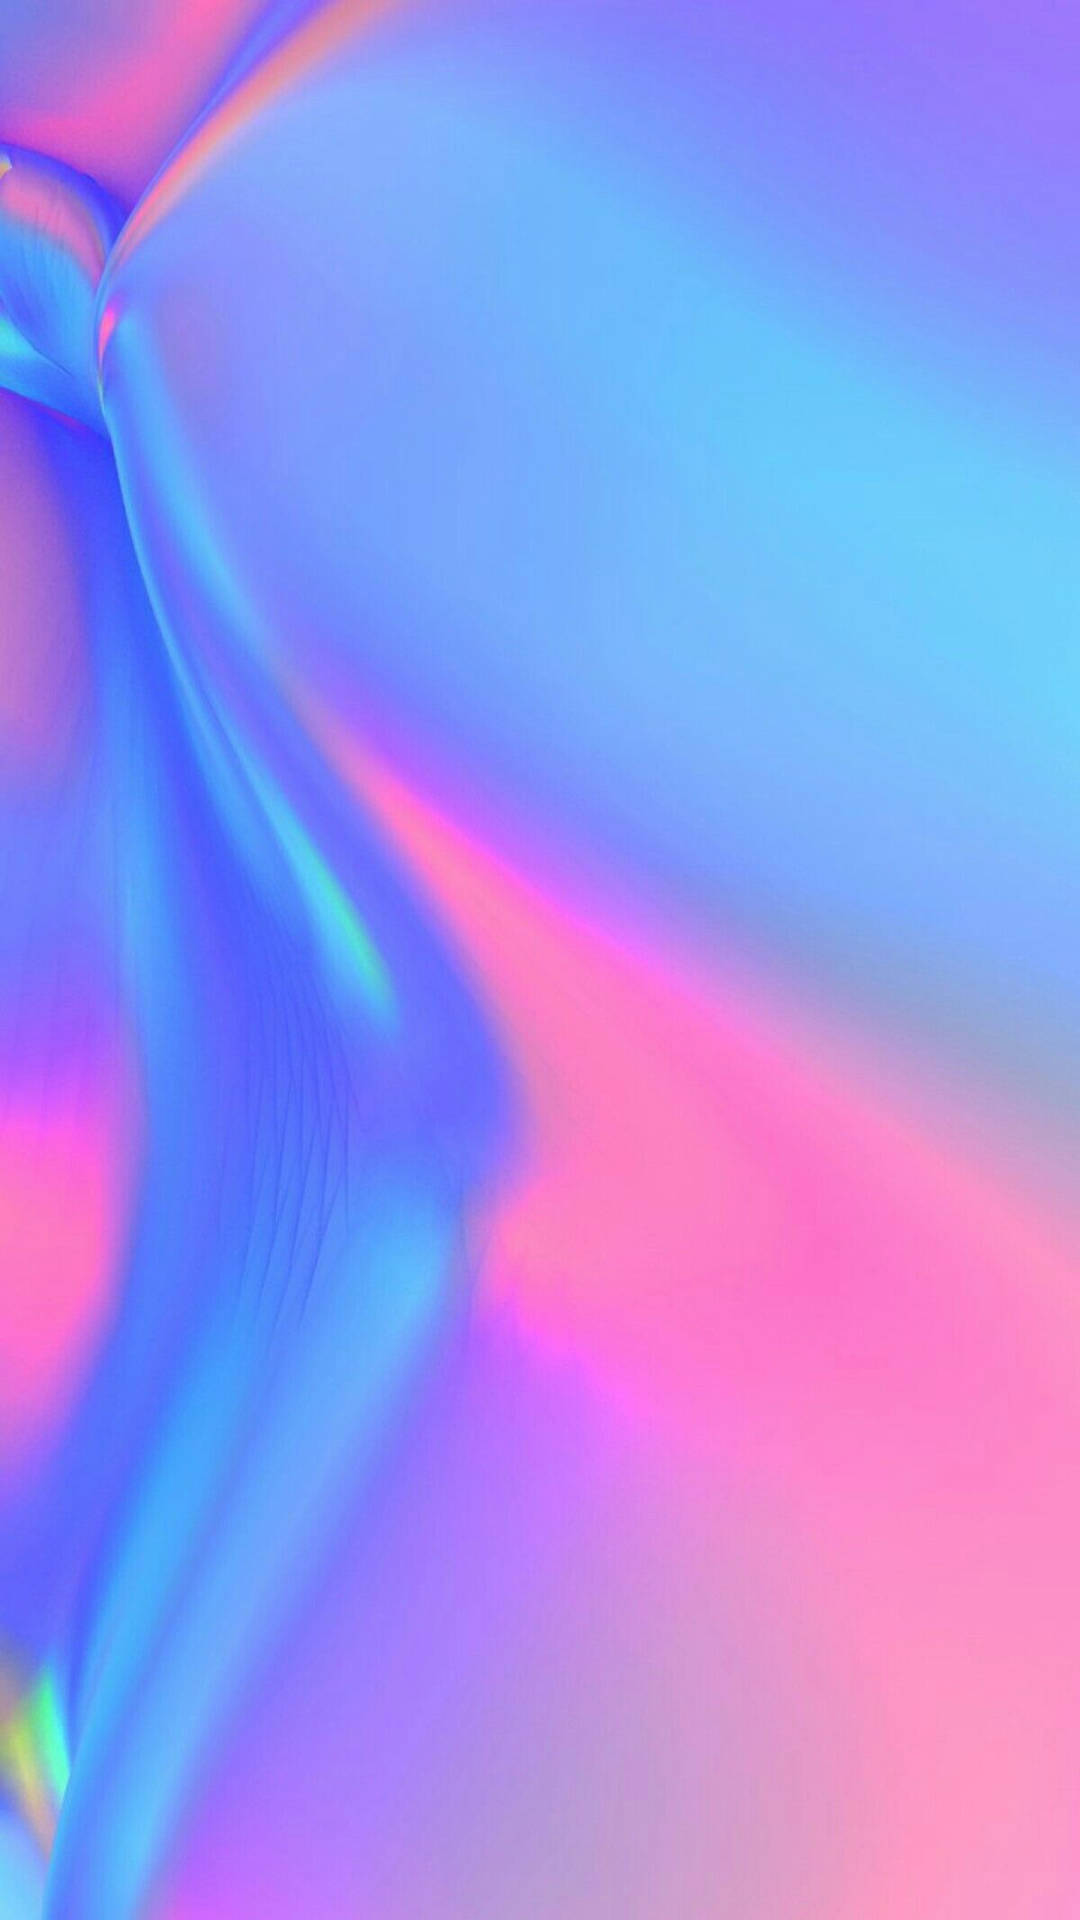 Holografisk baggrund med let lilla iPhone-etuier Wallpaper